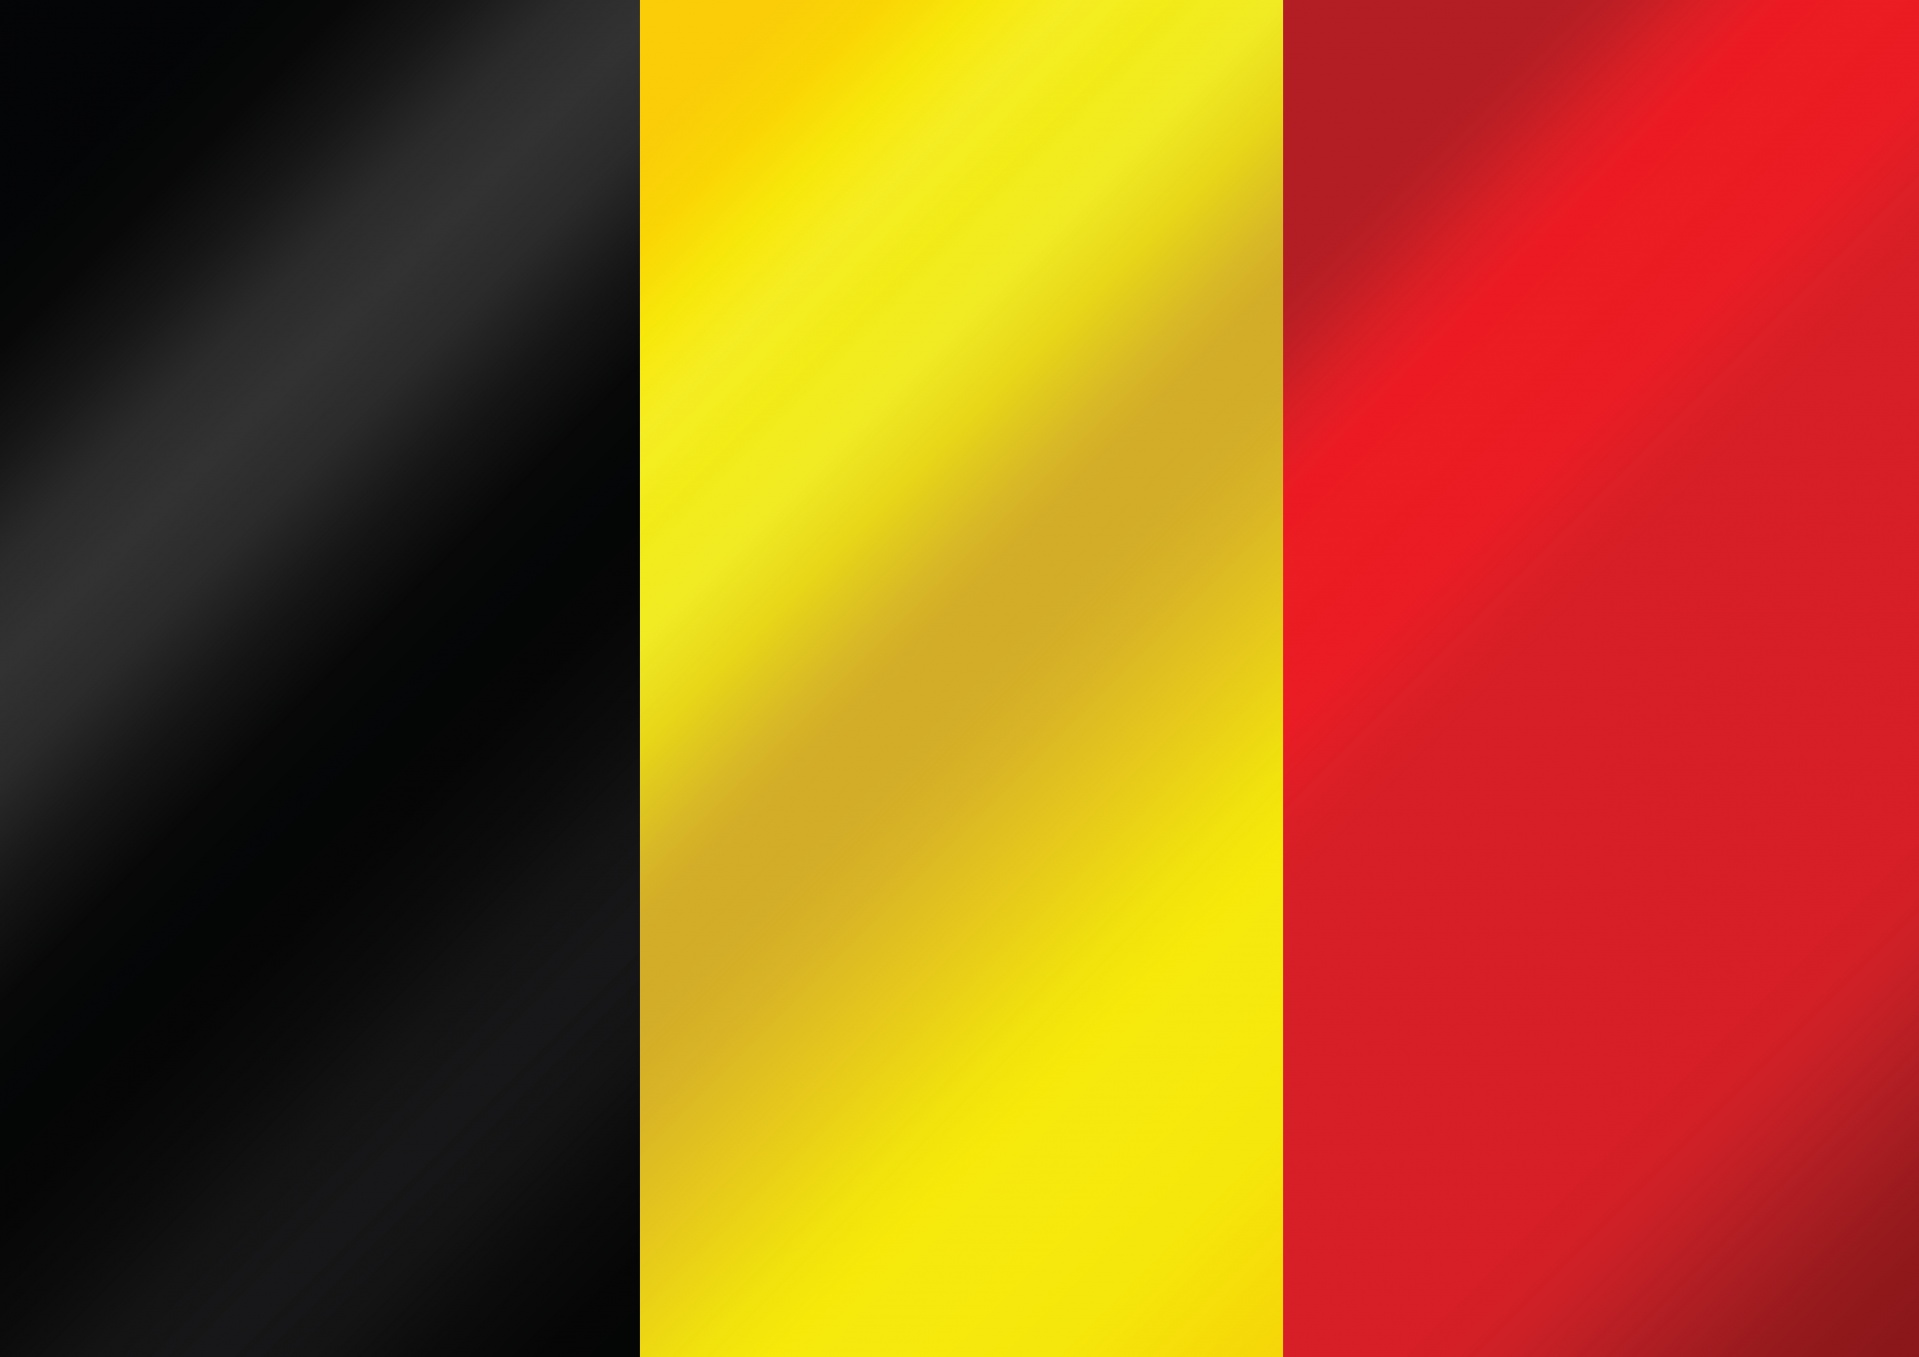 比利时国旗主题设计免费图片- Public Domain Pictures